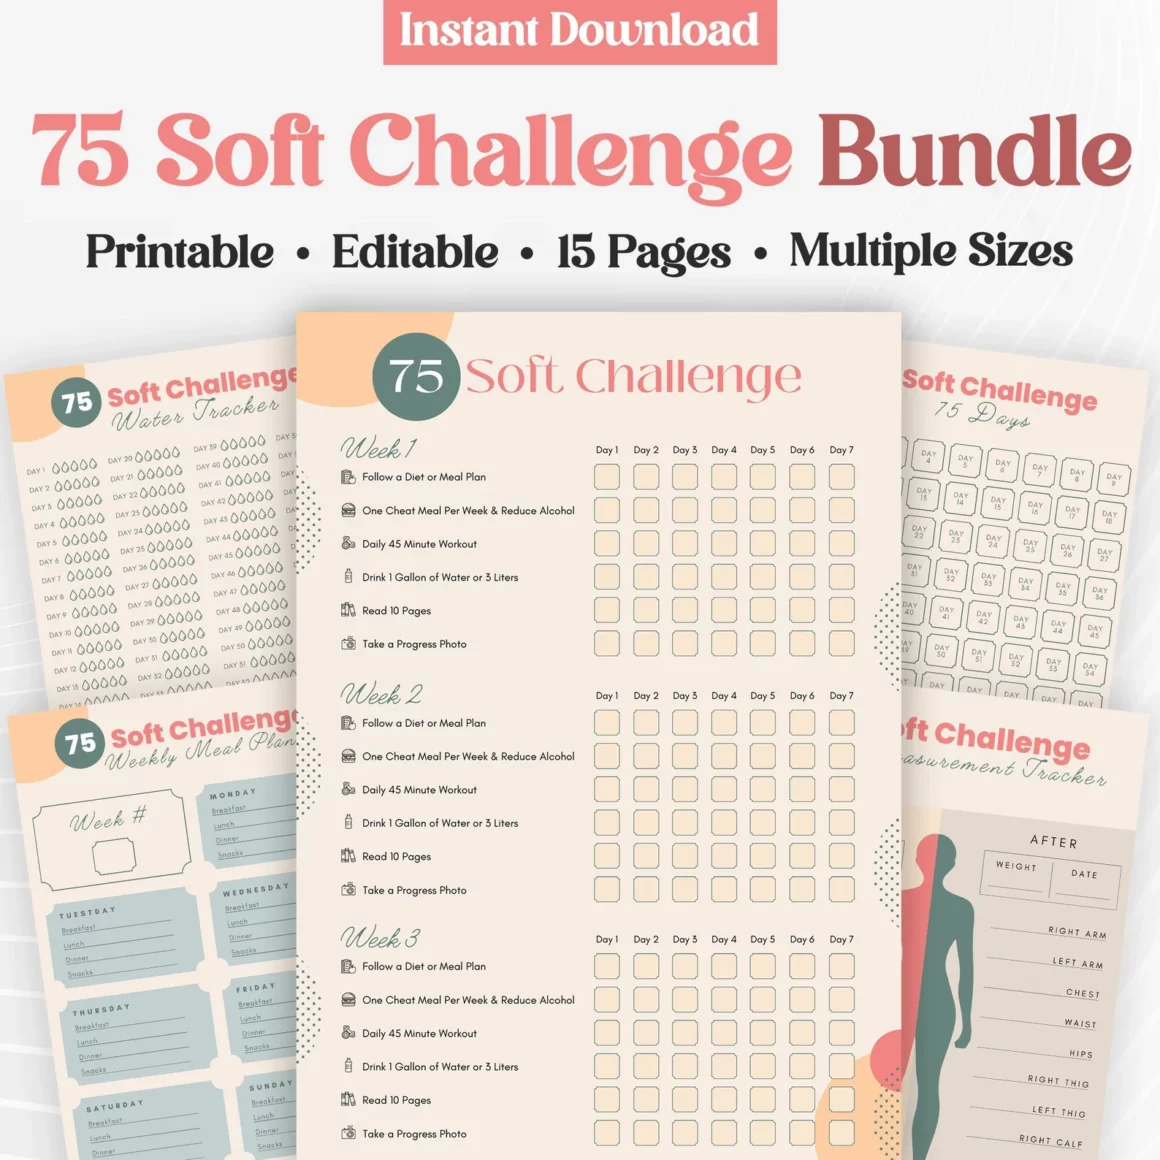 75 Soft Challenge Bundle - Printable 